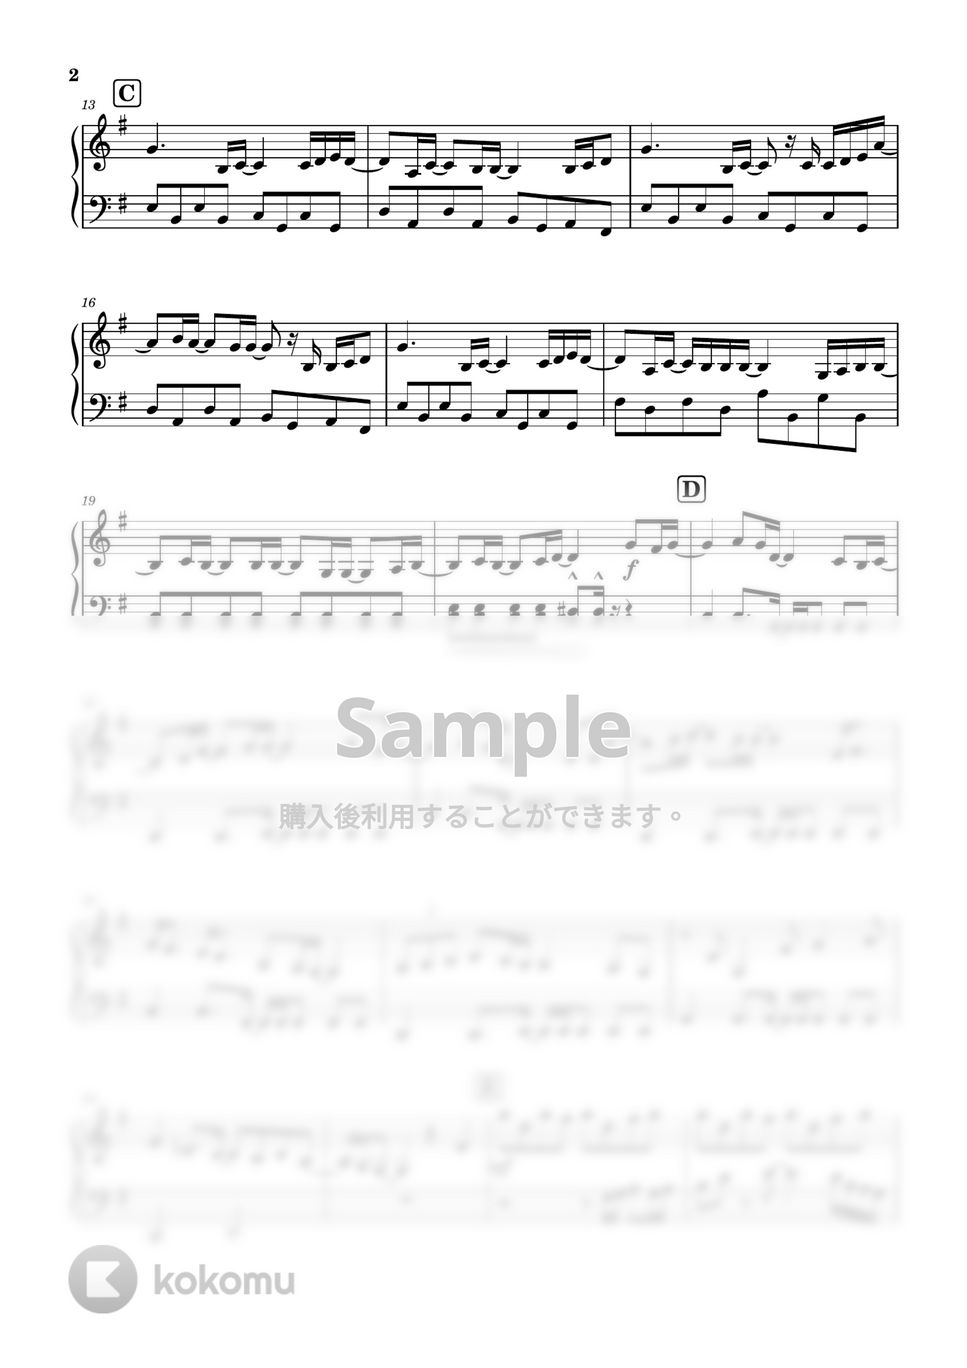 優里 - ドライフラワー (超簡単ピアノソロ) by 川上龍